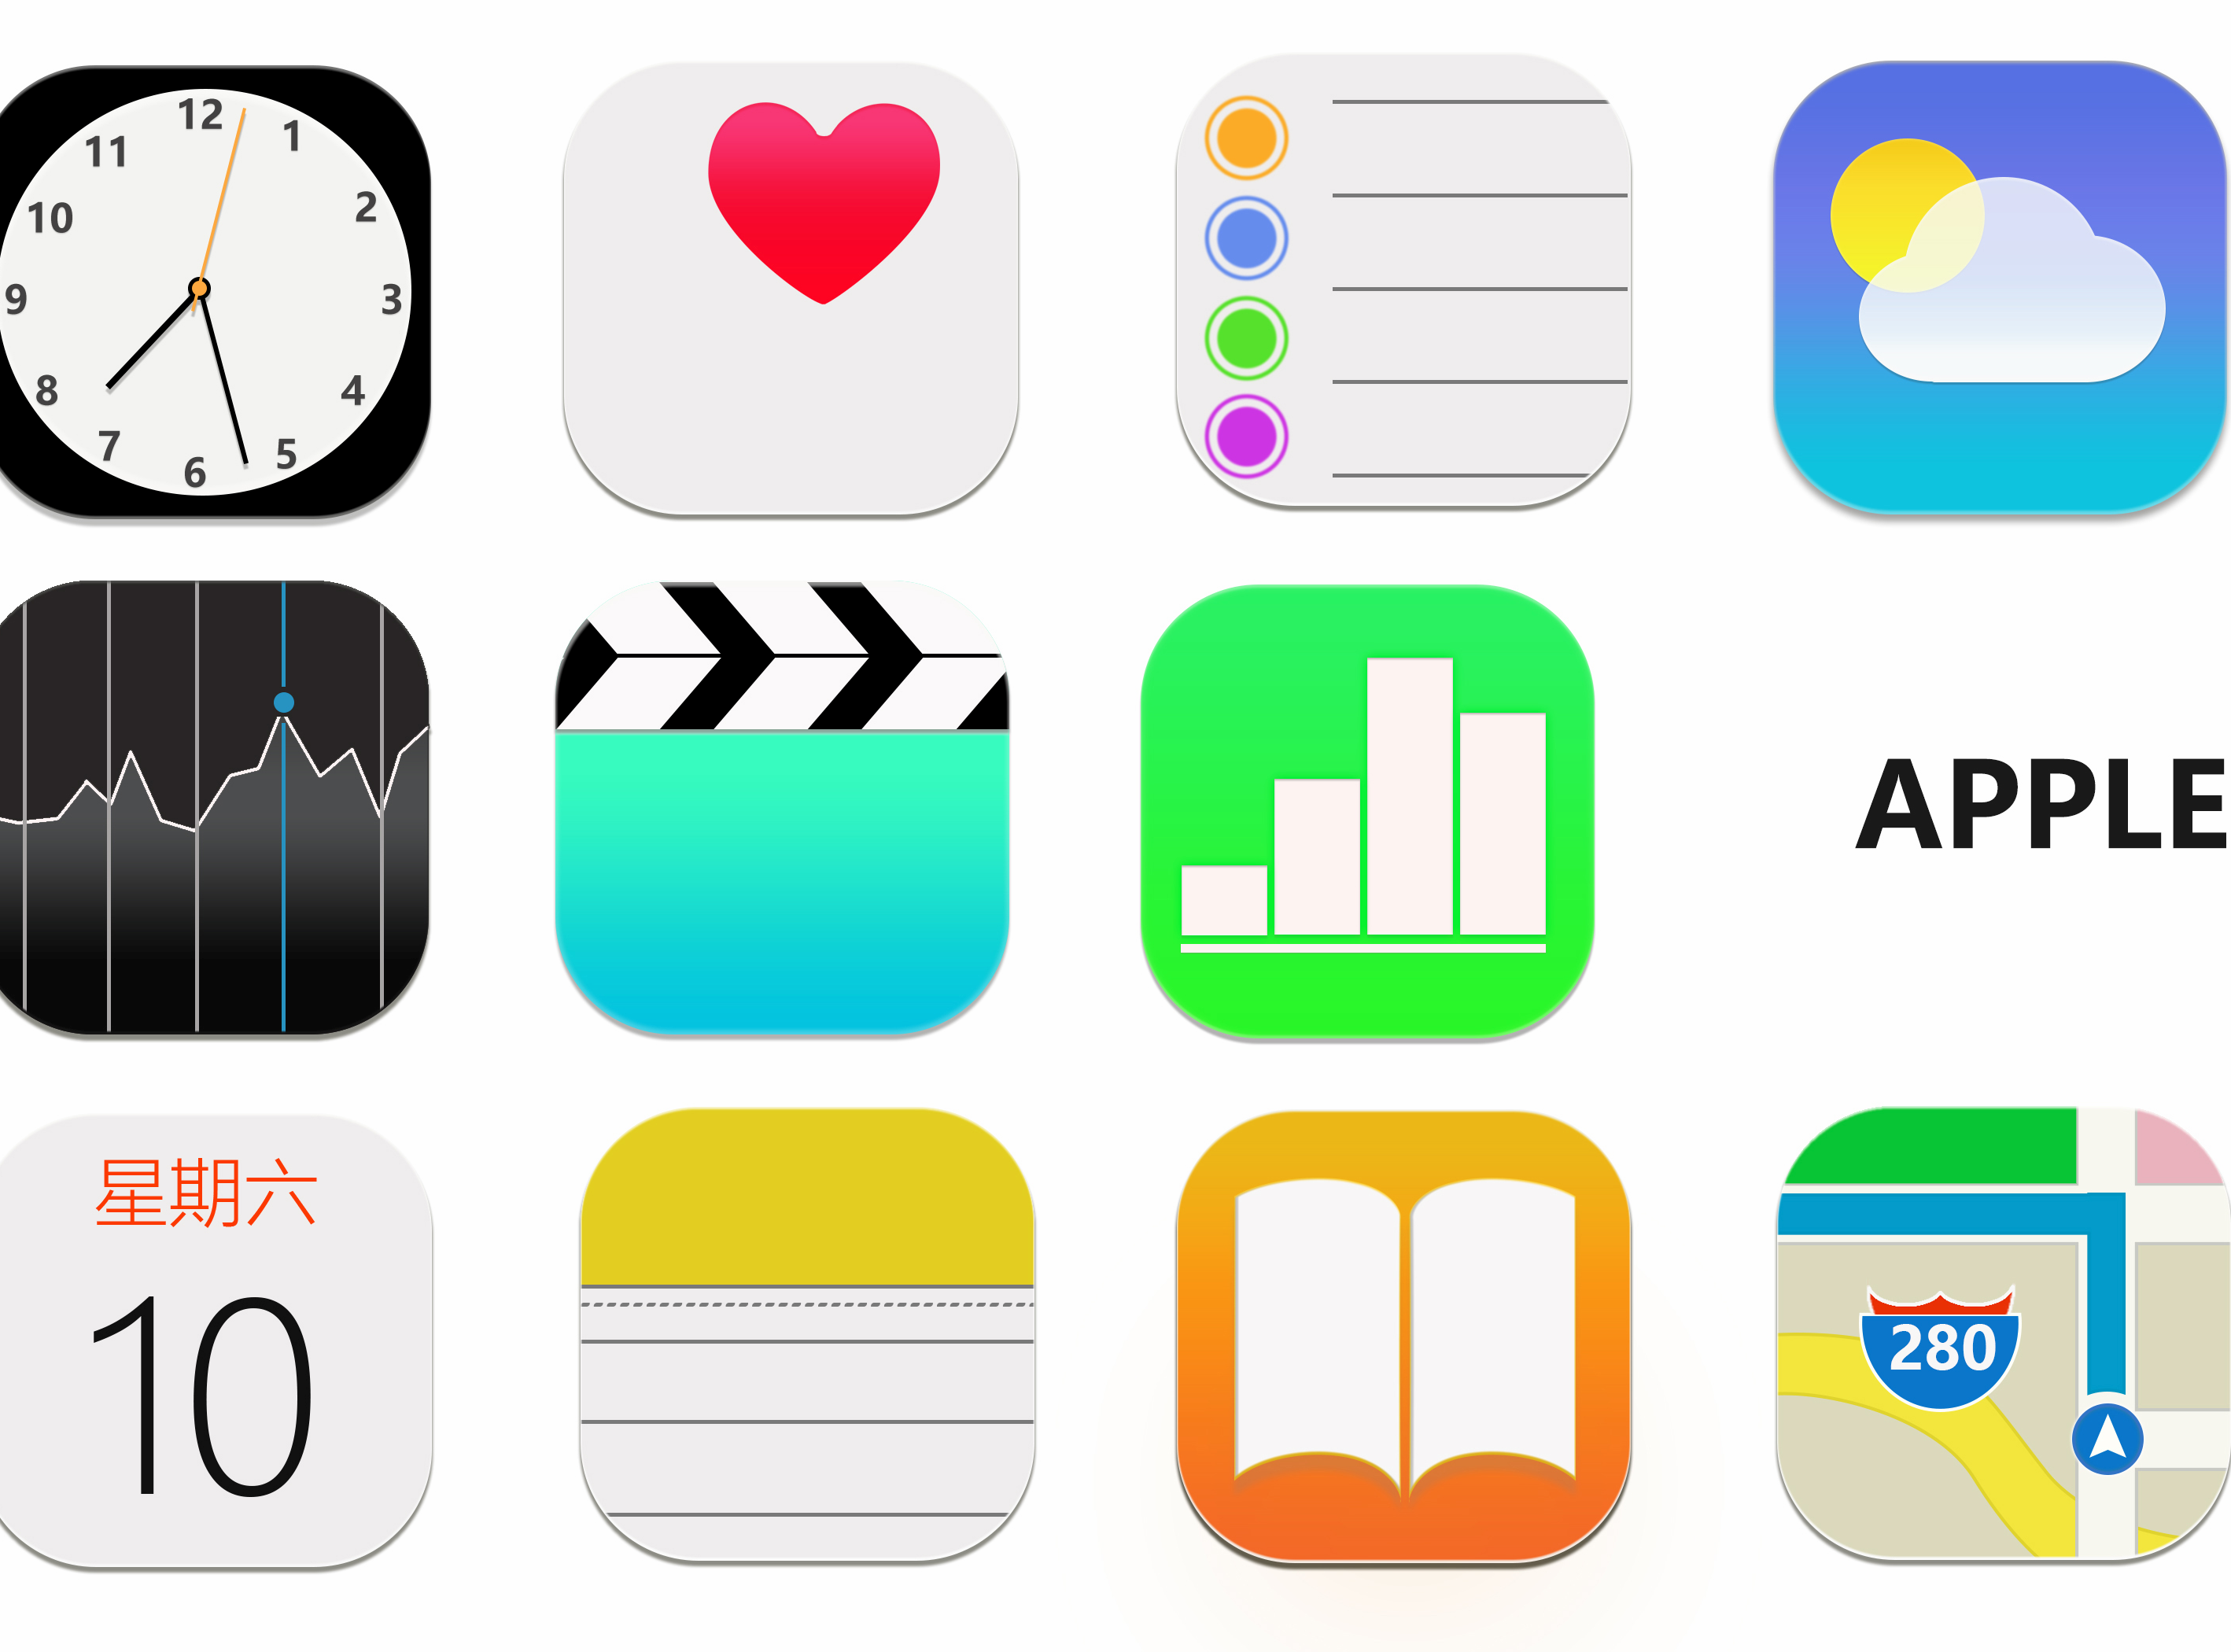 苹果iOS14简约风格EMUI10主题 - 主题爱好者修改主题 花粉俱乐部